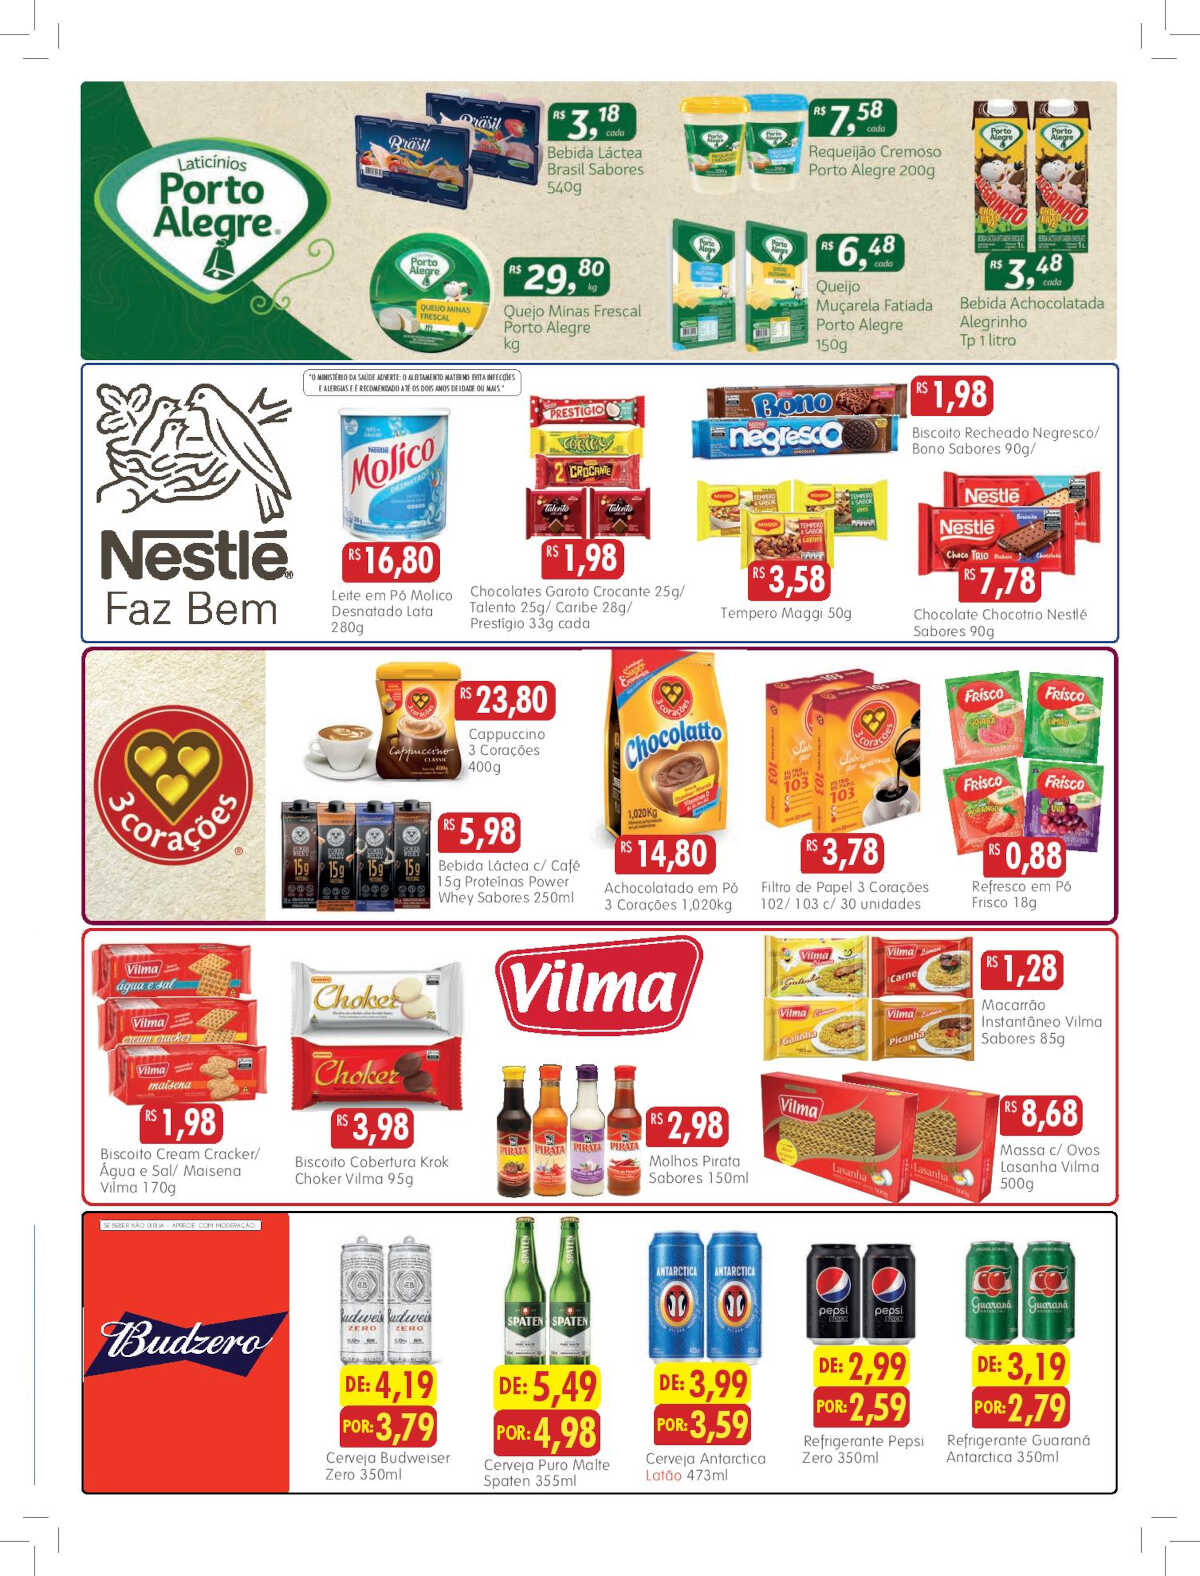 Ofertas Epa Supermercados até 27/03